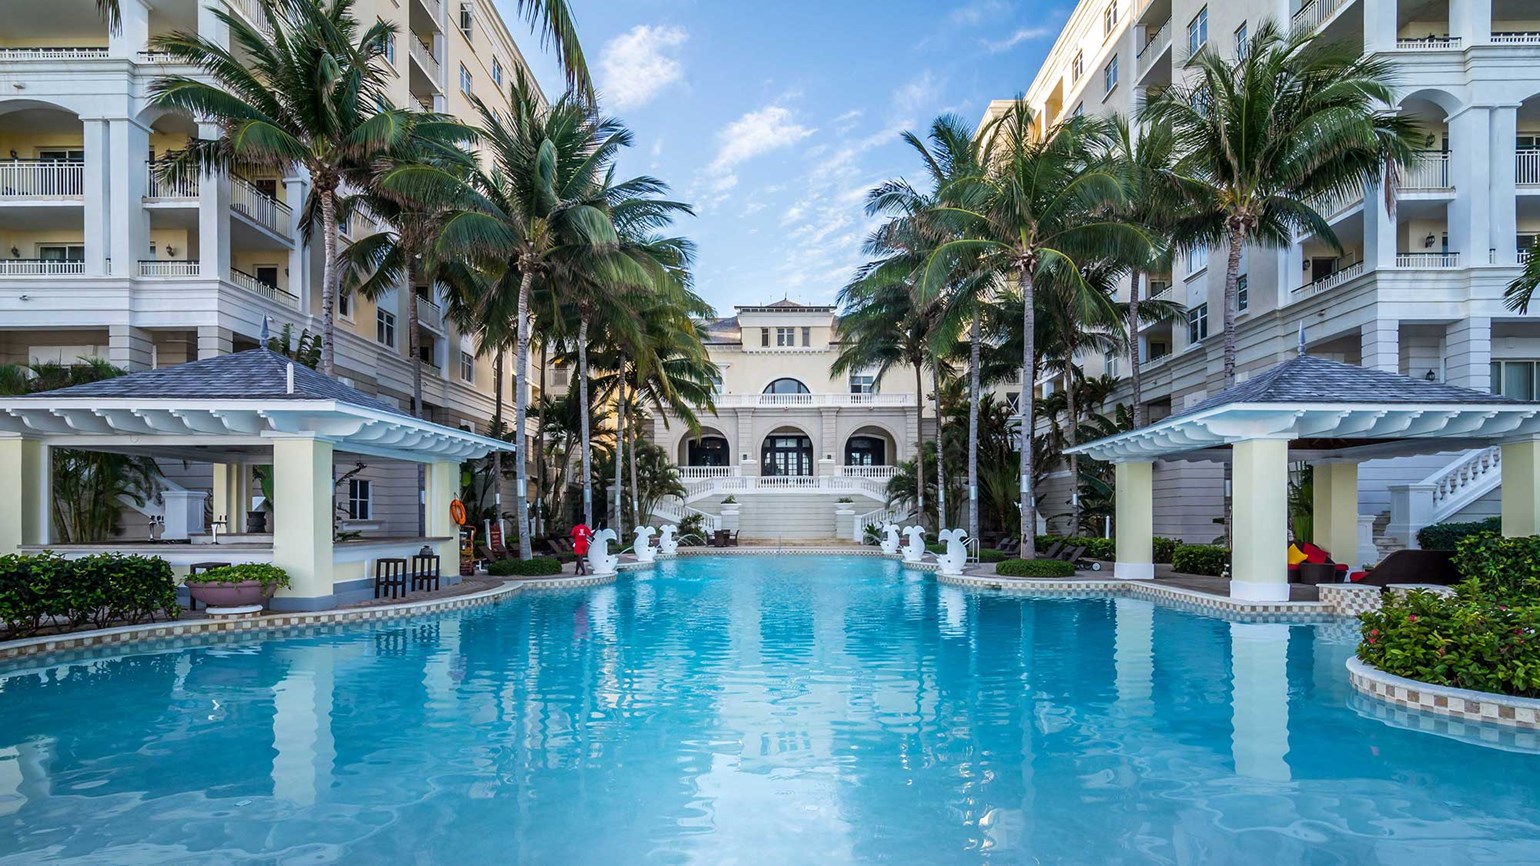 Playa 3亿美元收购5座豪华度假村 加码牙买加全包式度假村市场